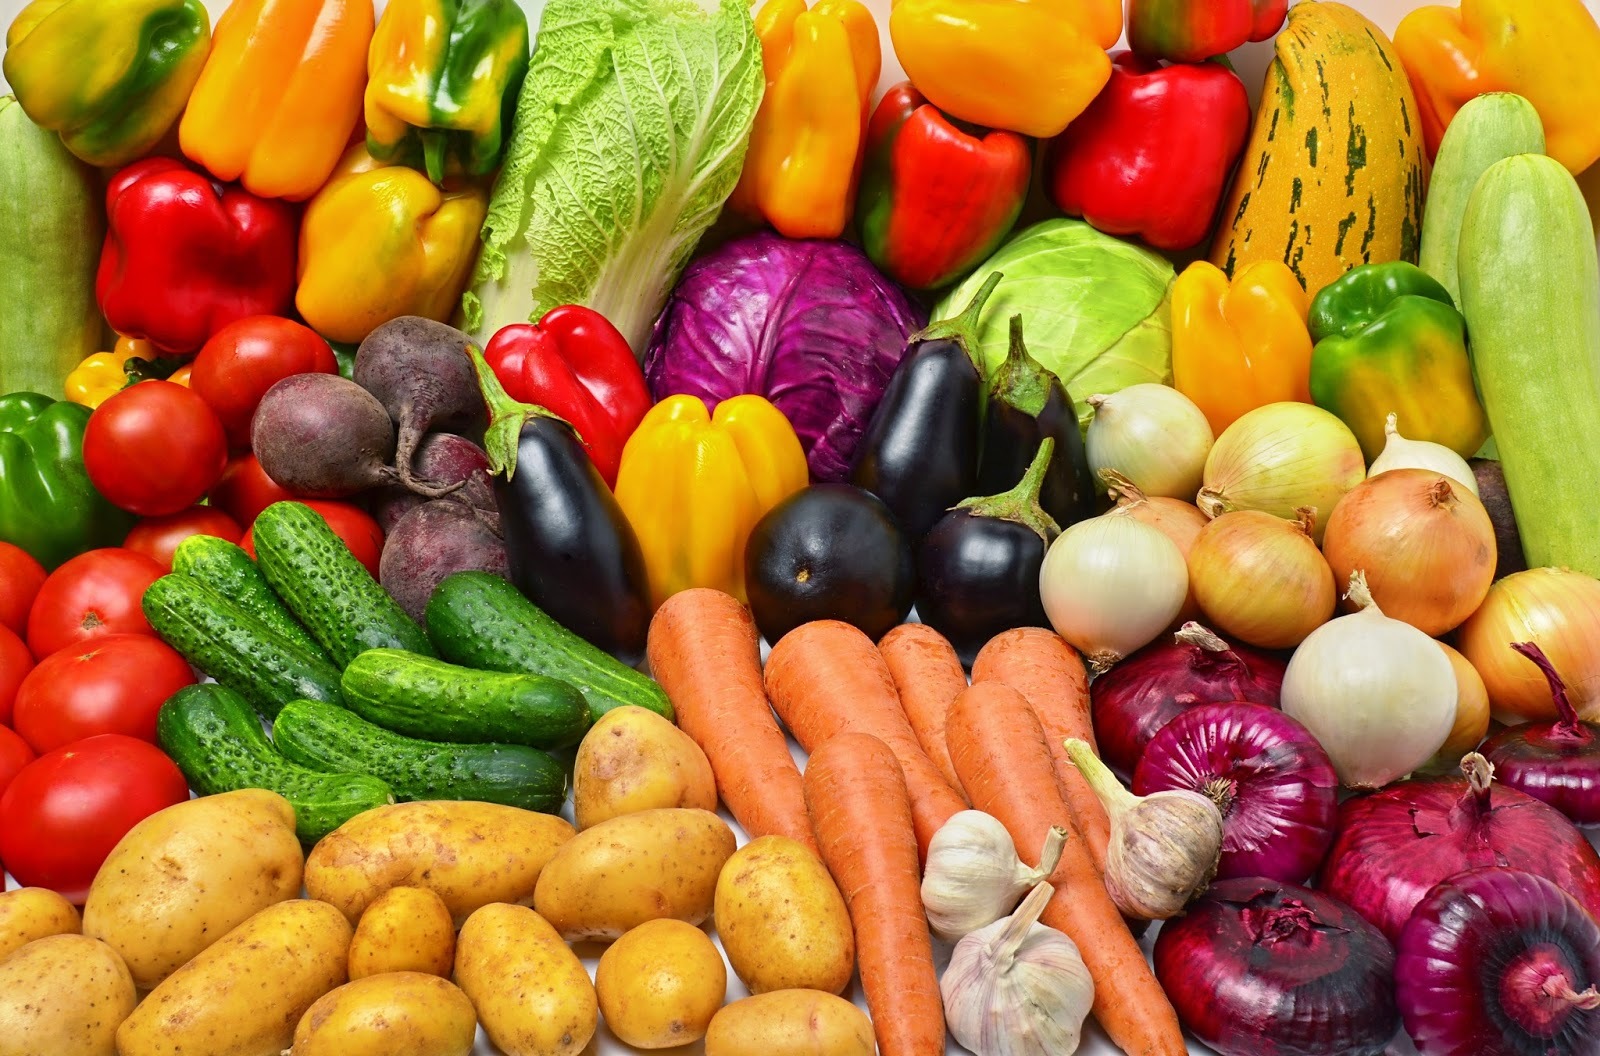 Увеличьте свой бизнес за счет оптовых закупок овощей у агропромышленного предприятия